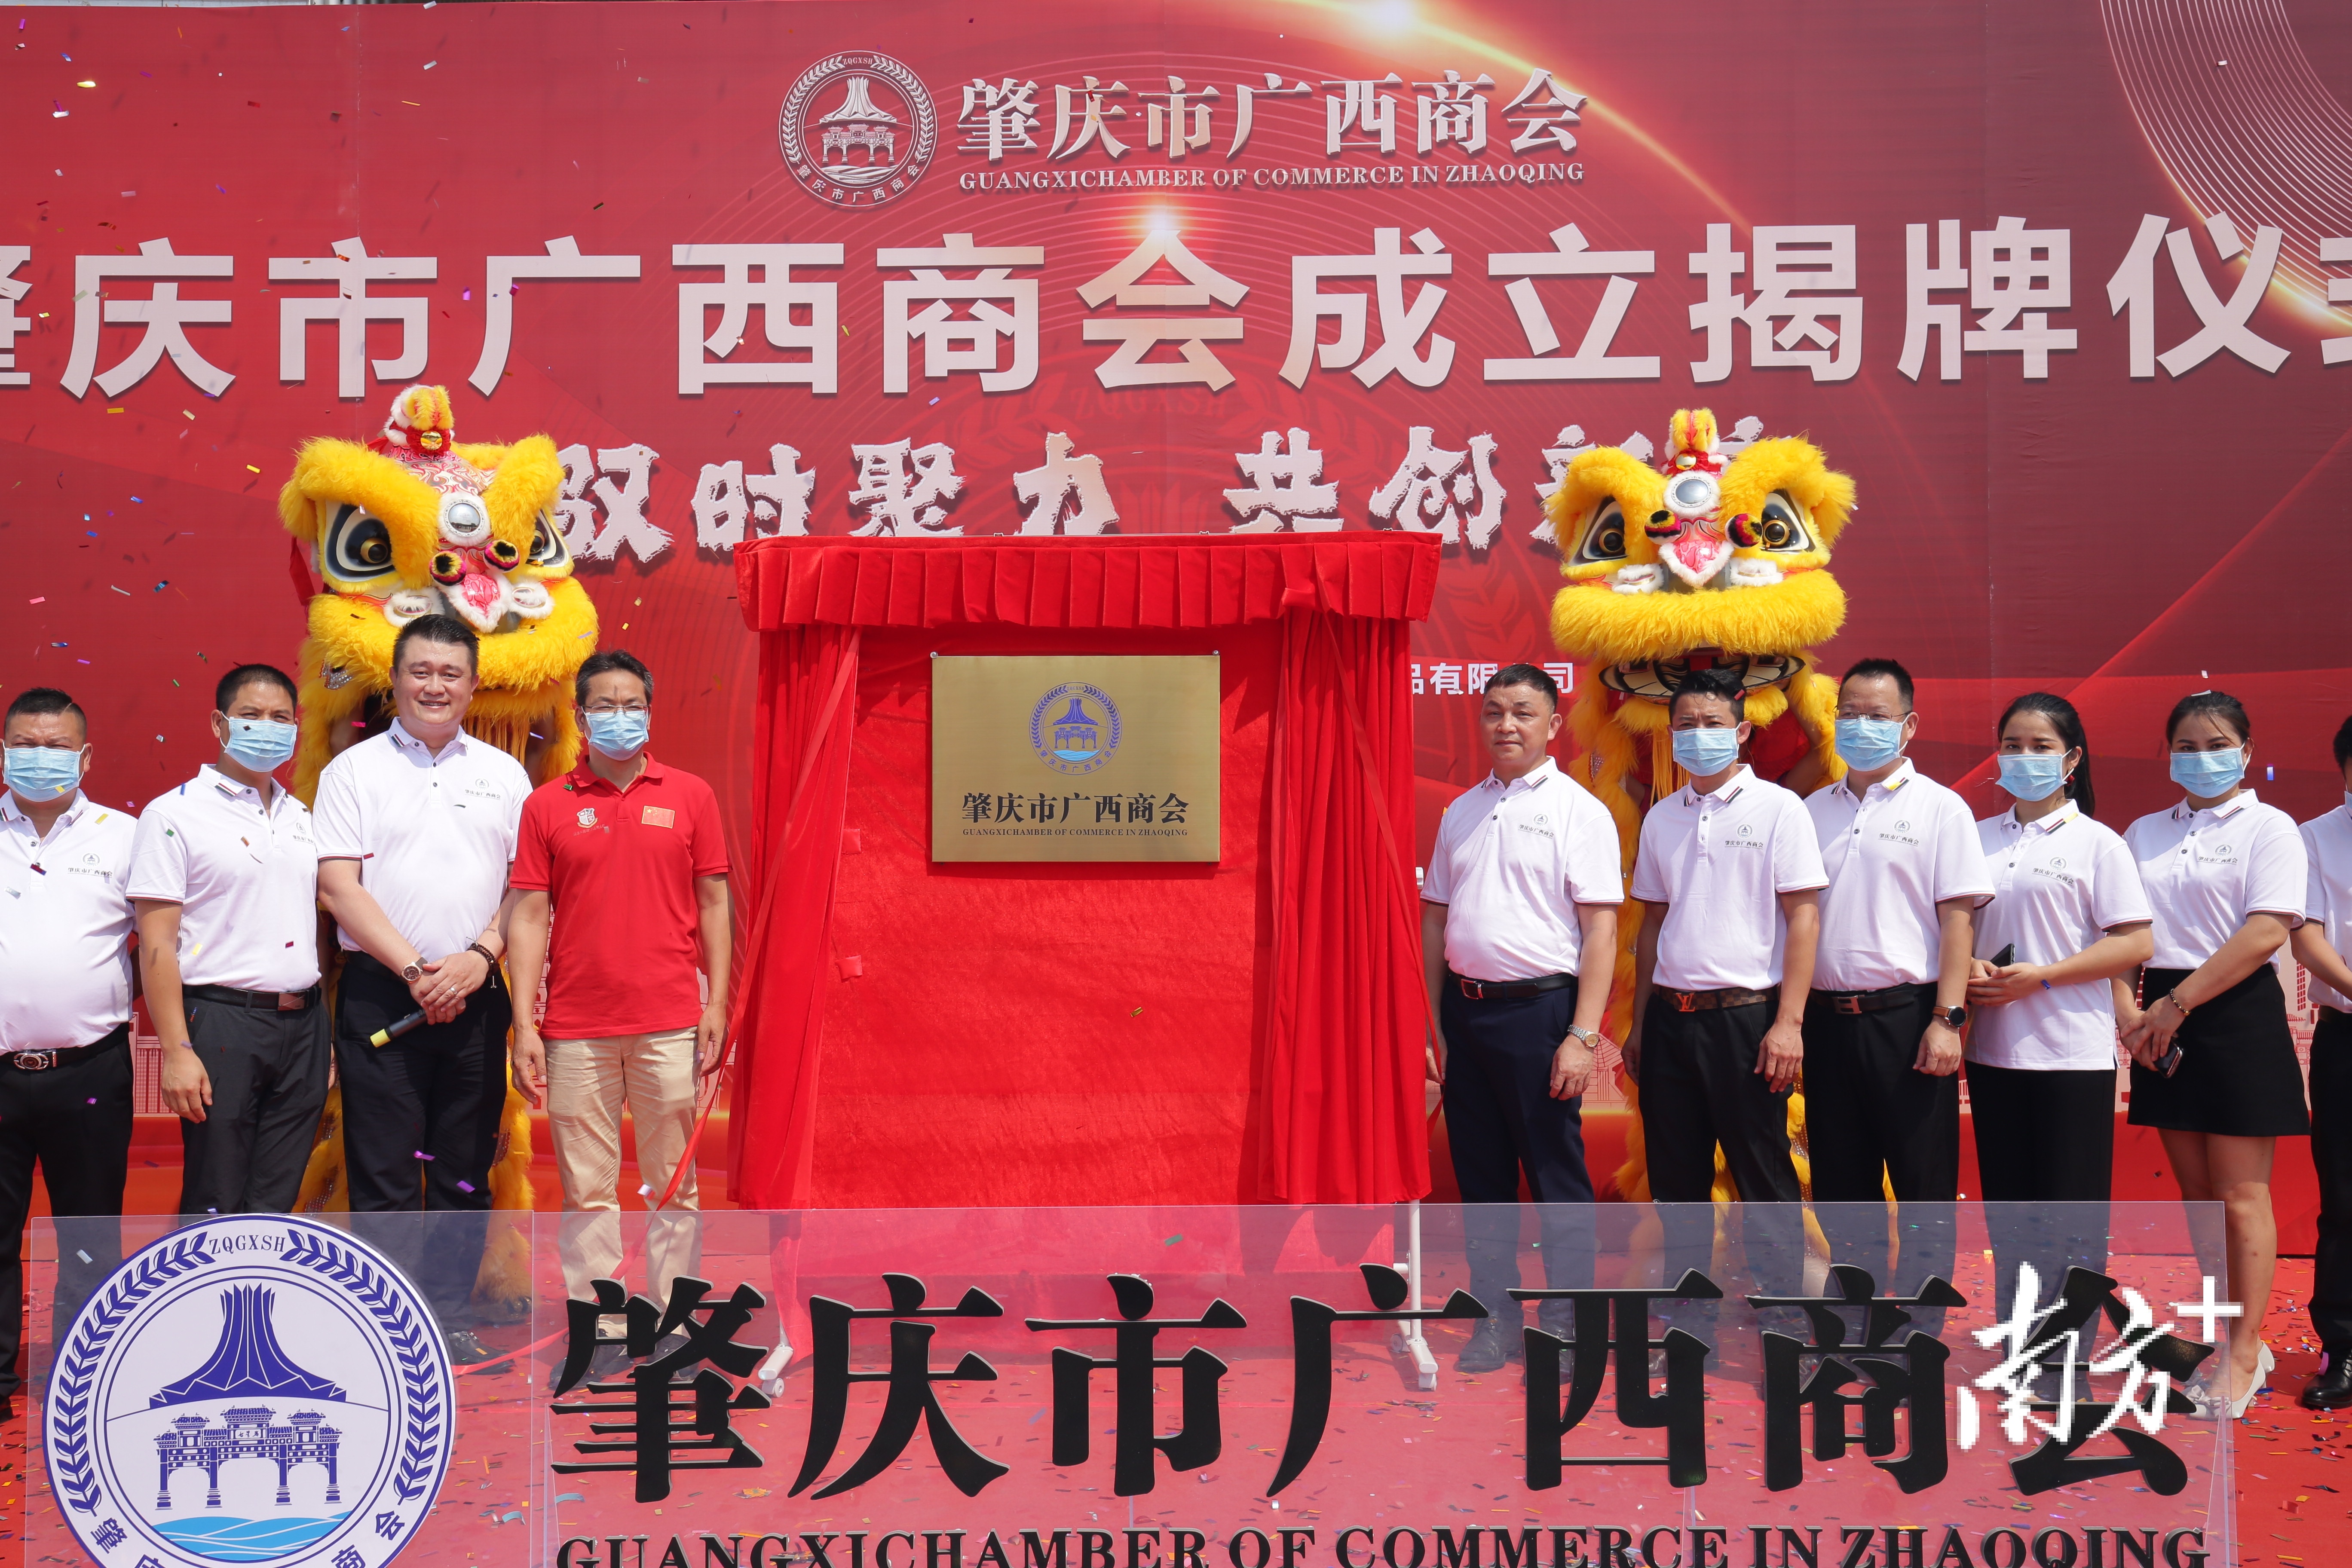 肇庆市广西商会29日揭牌成立。 受访者供图